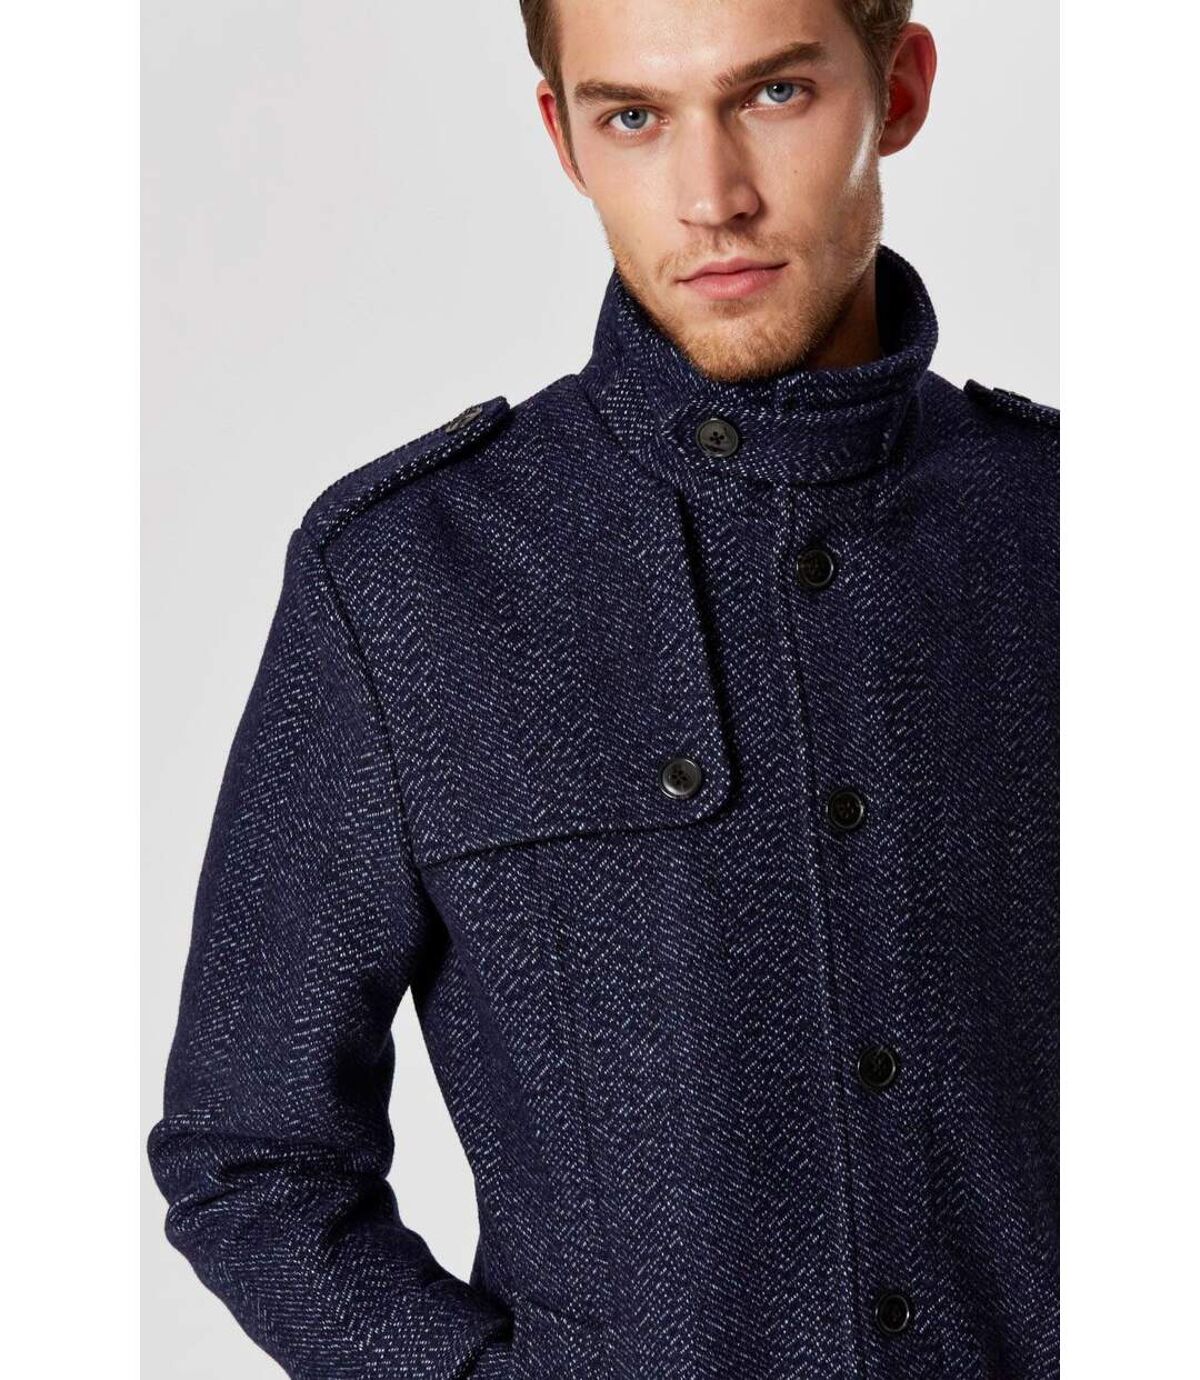 Manteau en laine boutonné